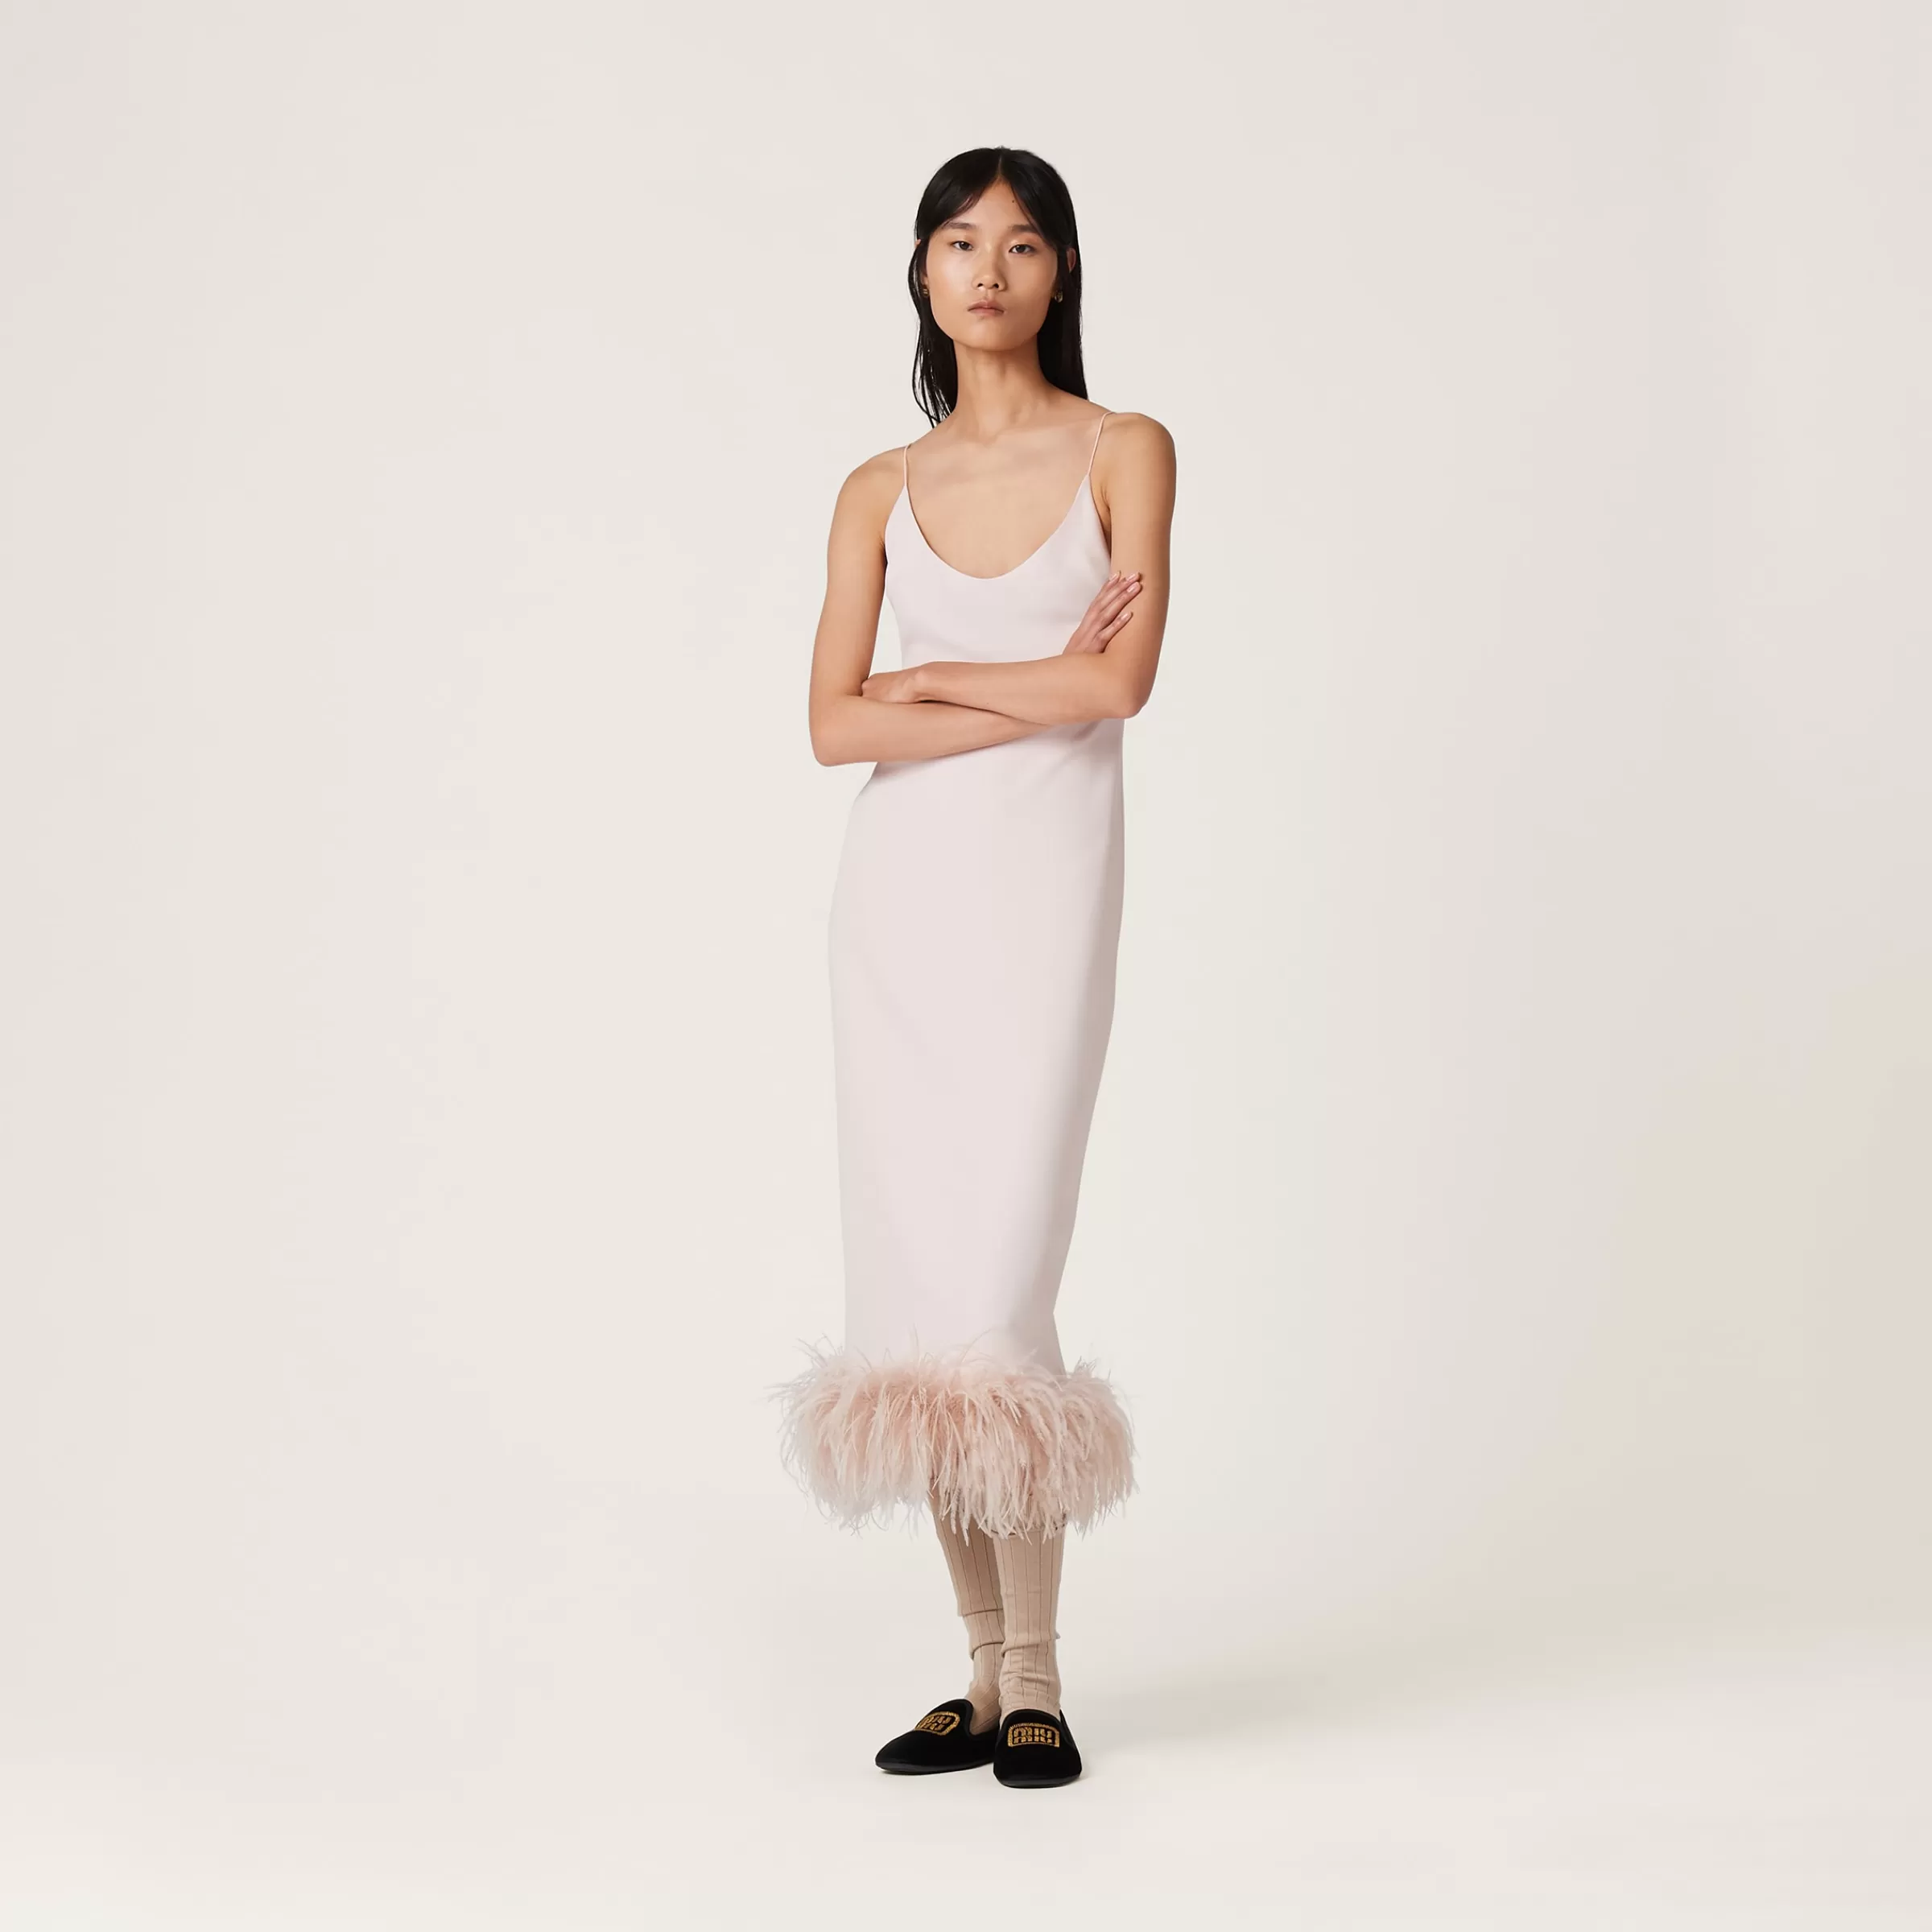 Miu Miu Stretch Cady Dress With Feathers |